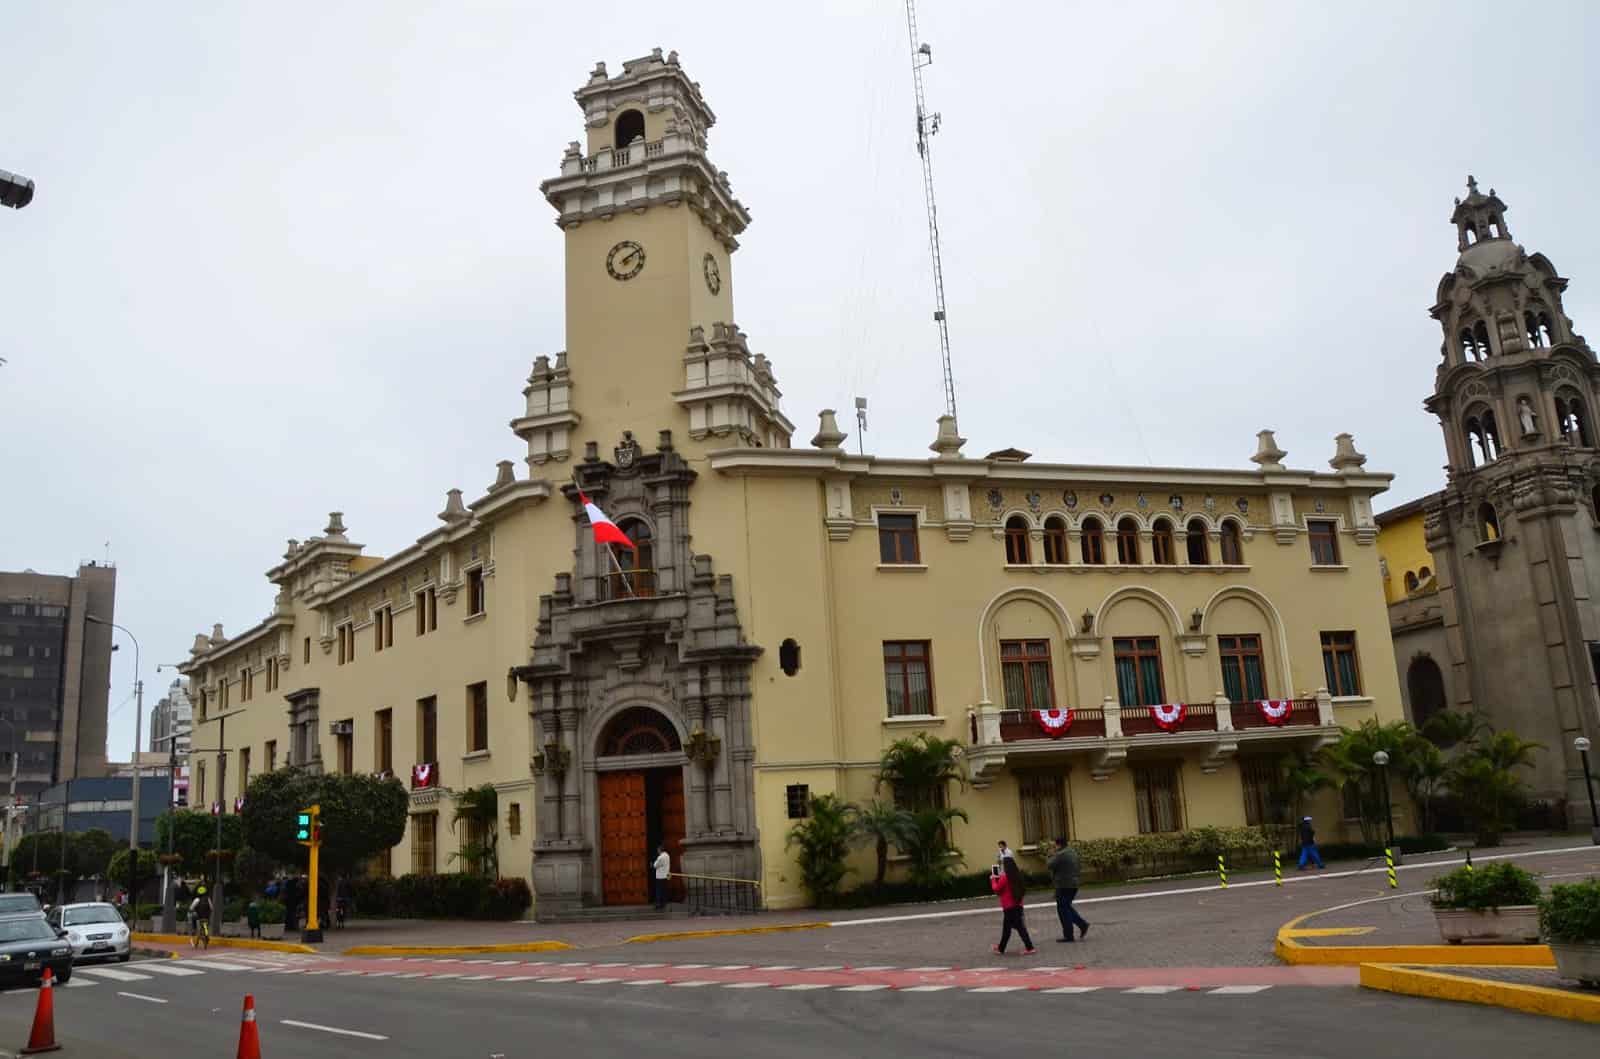 Municipalidad Distrital de Miraflores in Miraflores, Lima, Peru